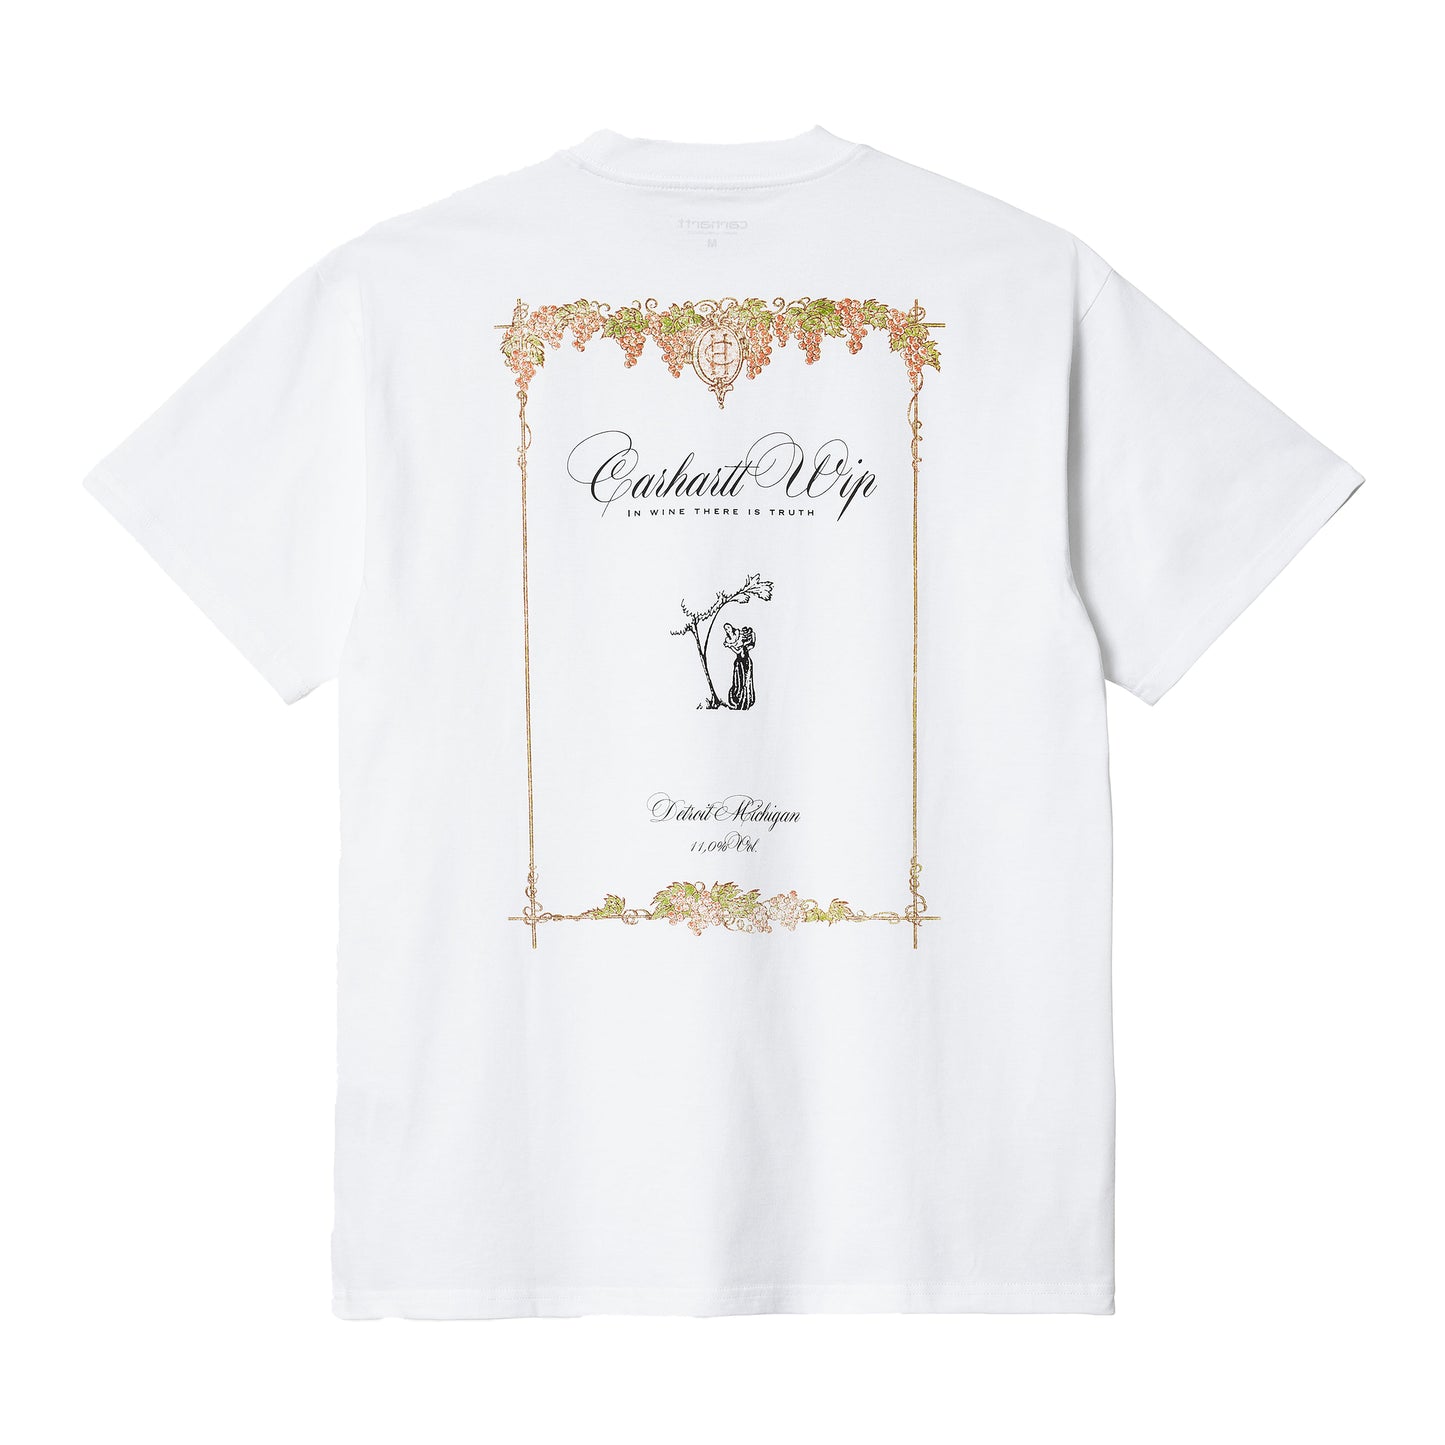 Carhartt WIP Vino T-Shirt